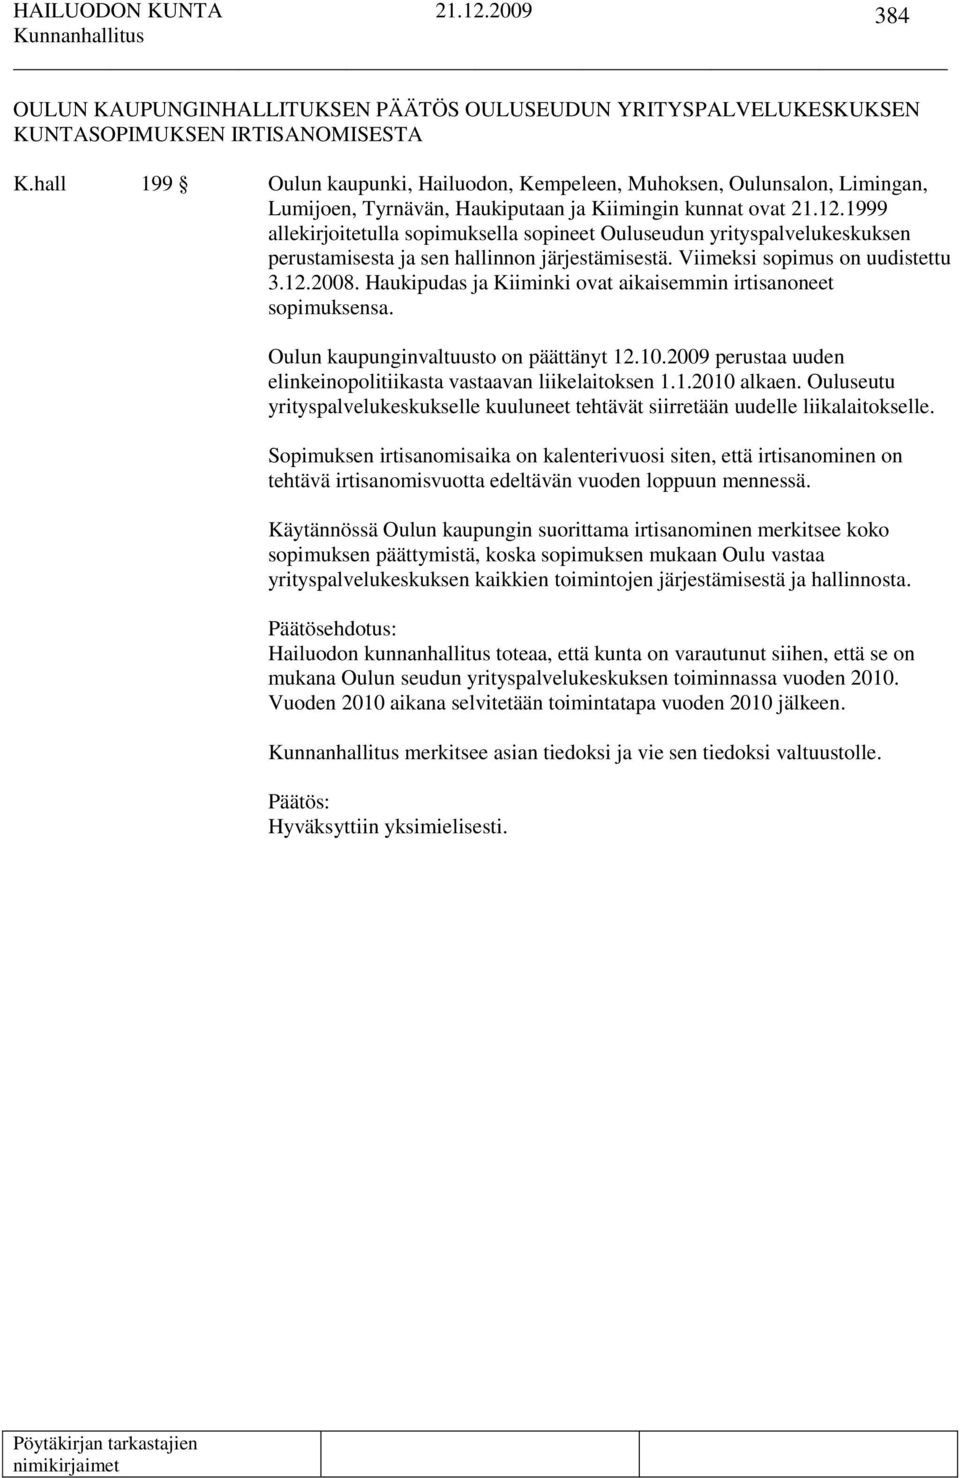 1999 allekirjoitetulla sopimuksella sopineet Ouluseudun yrityspalvelukeskuksen perustamisesta ja sen hallinnon järjestämisestä. Viimeksi sopimus on uudistettu 3.12.2008.